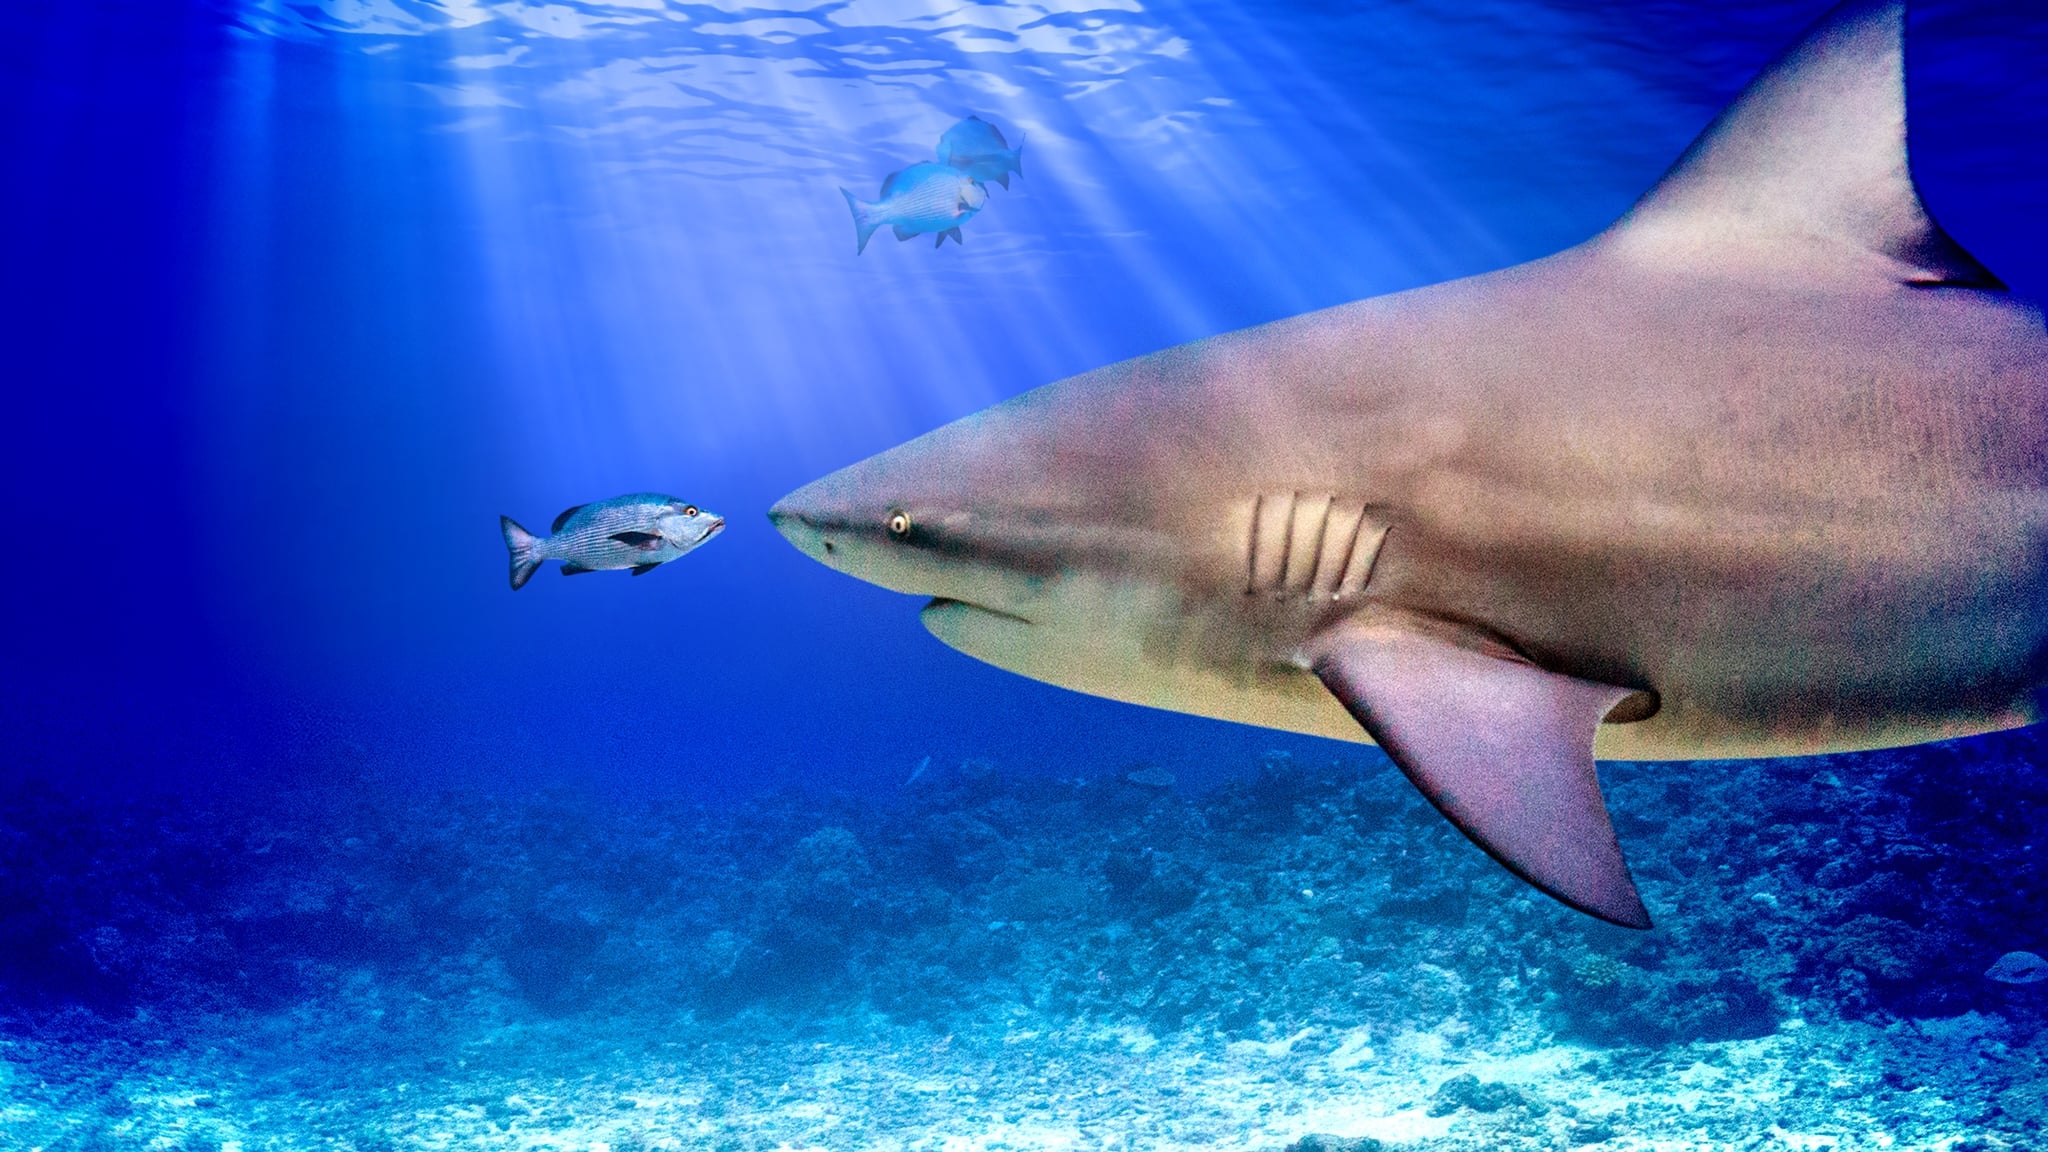 World’s Biggest Bull Shark? 2021 123movies